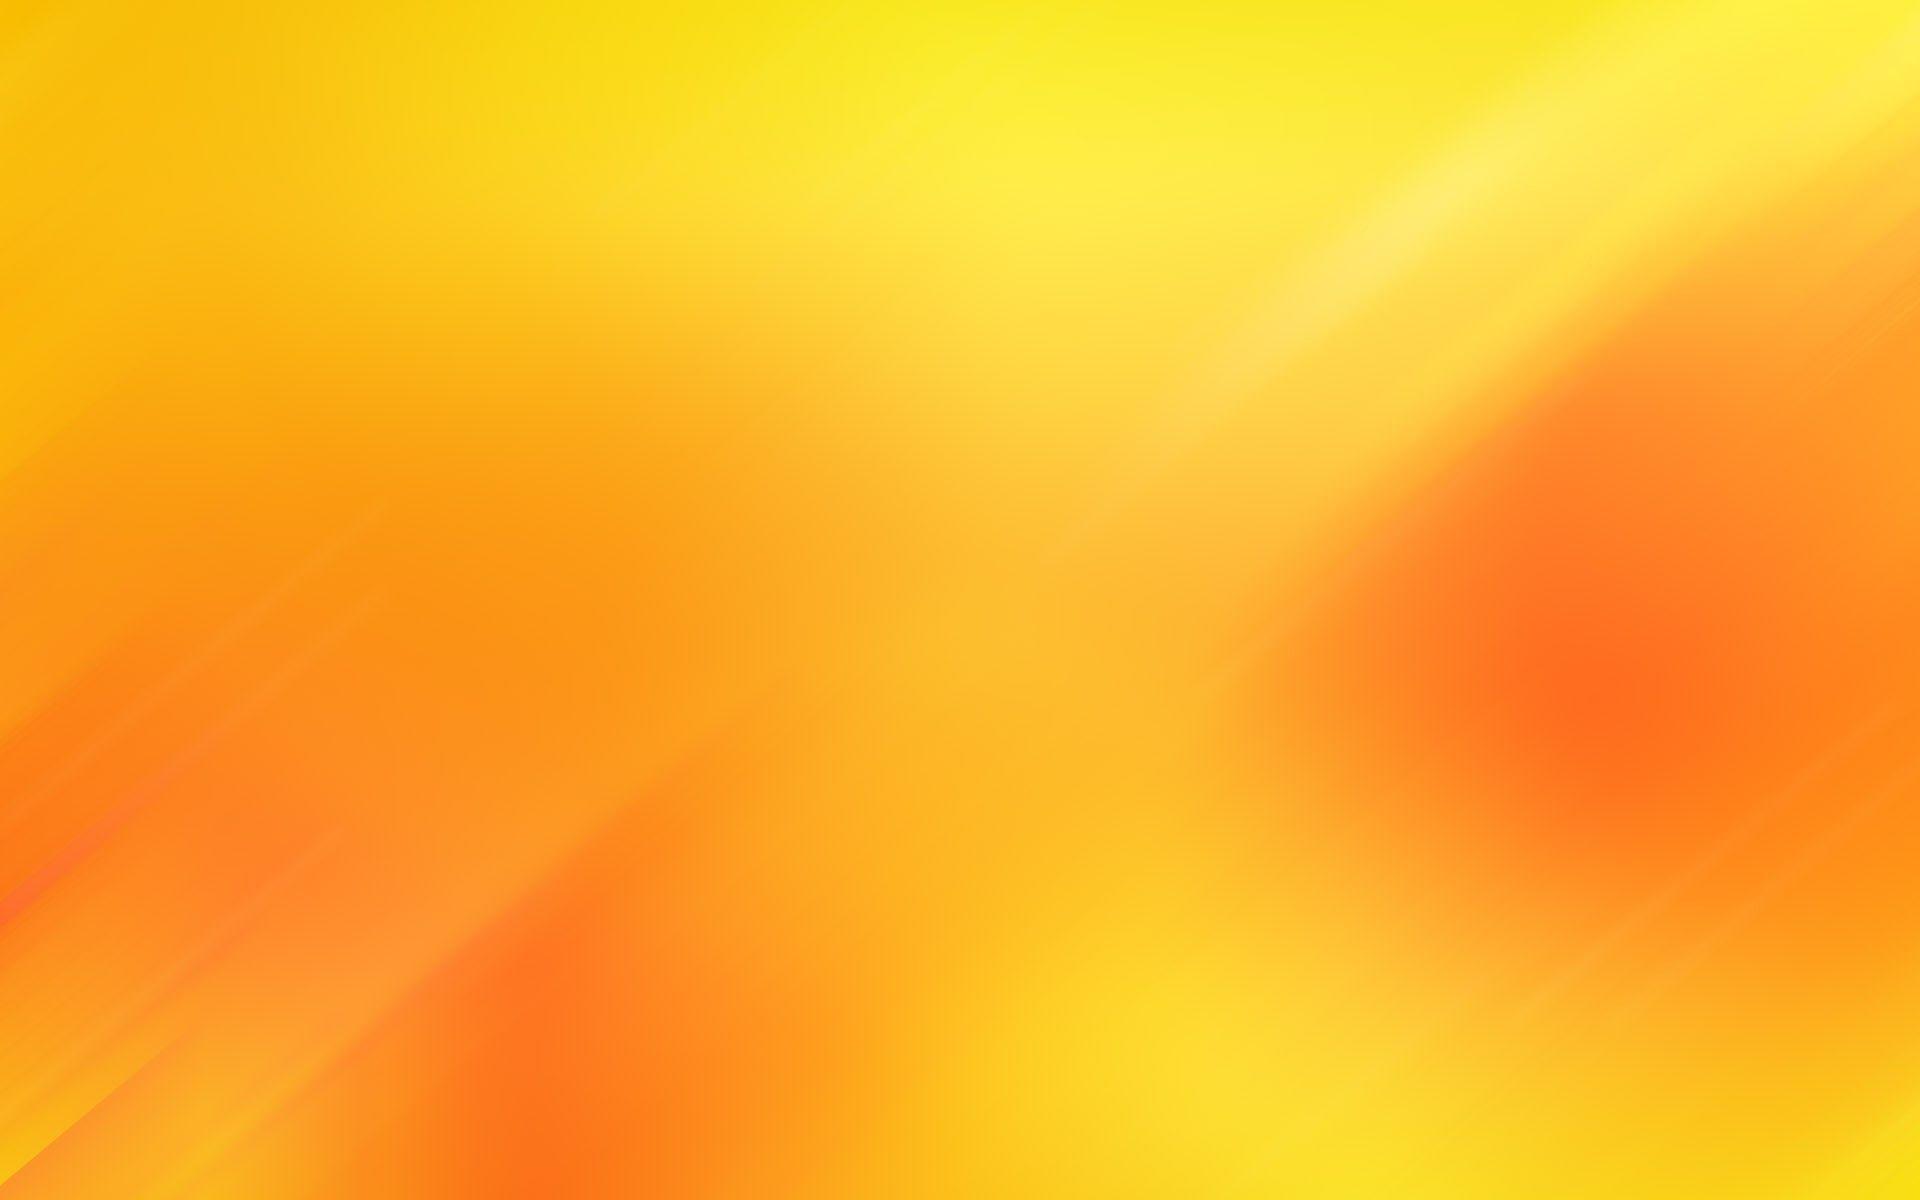 Orange Gradient Wallpapers Top Free Orange Gradient Backgrounds